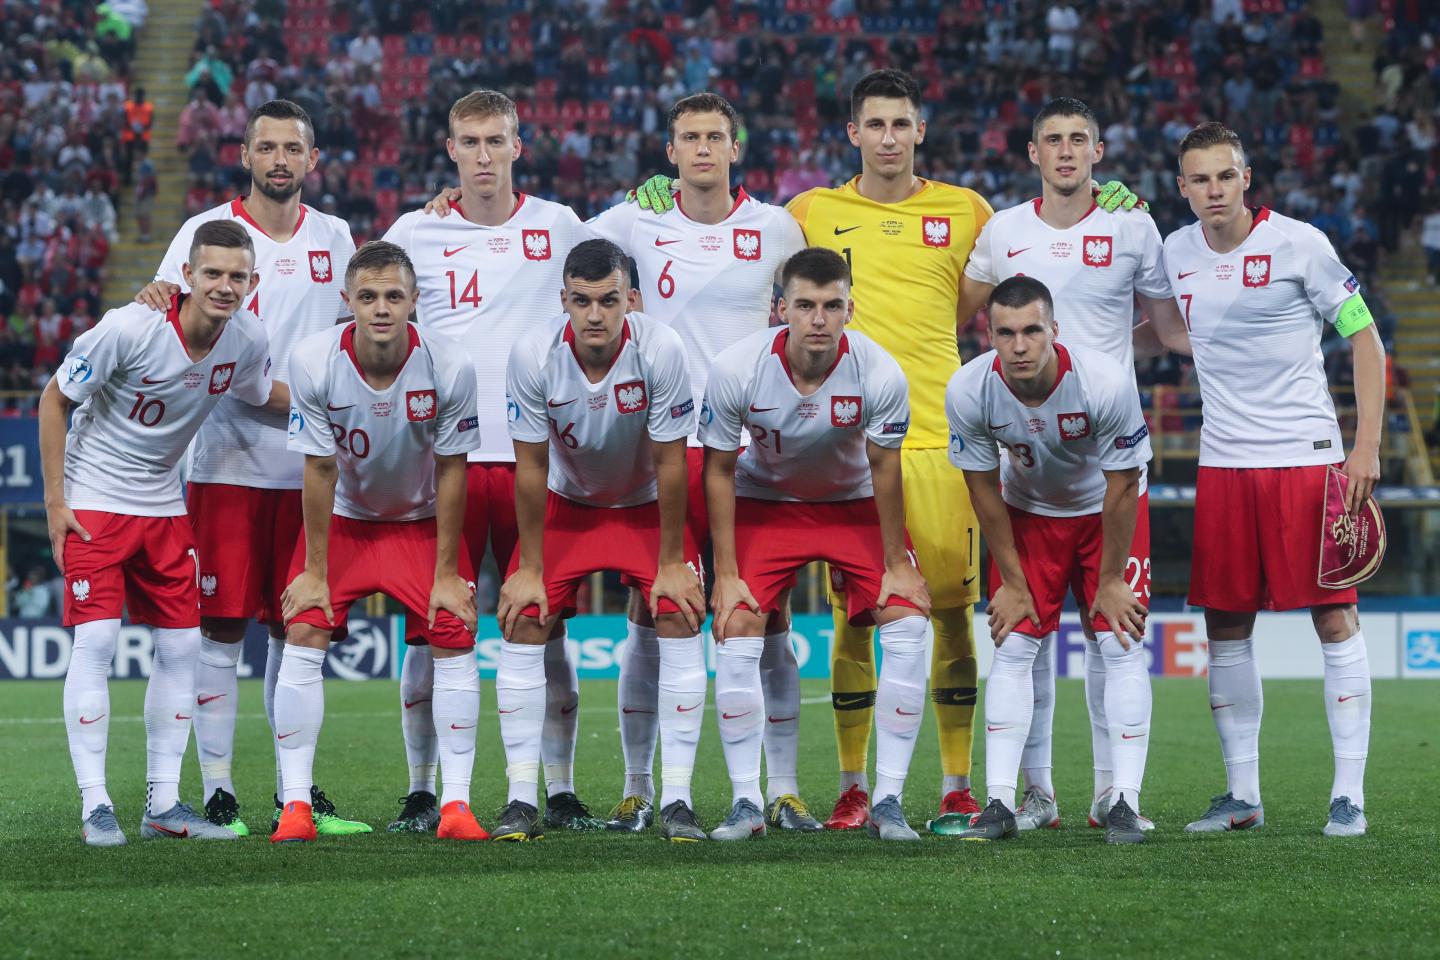 Grupowe zdjęcie reprezentacji Polski do lat 21 przed meczem z Hiszpanią, przegranym 0:5. Polacy w białych koszulkach i czerwonych spodenkach. Bramkarz Kamil Grabara na żółto.